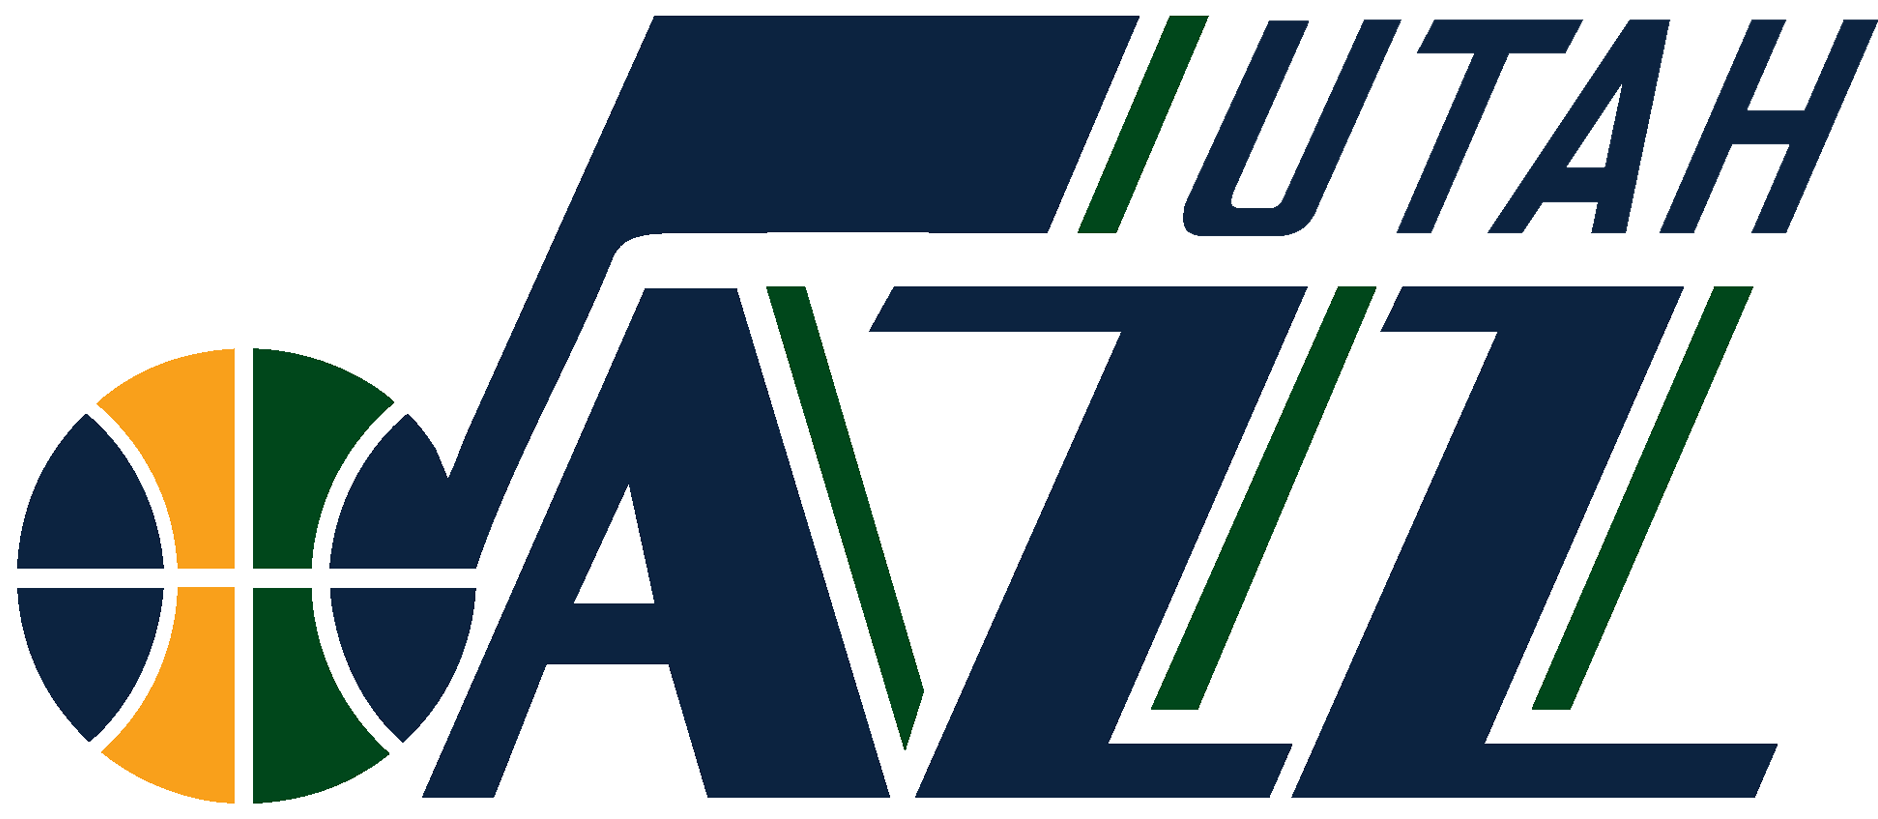 Jazz Club Logos - Utah Jazz Logo 2016 (1920x1080)